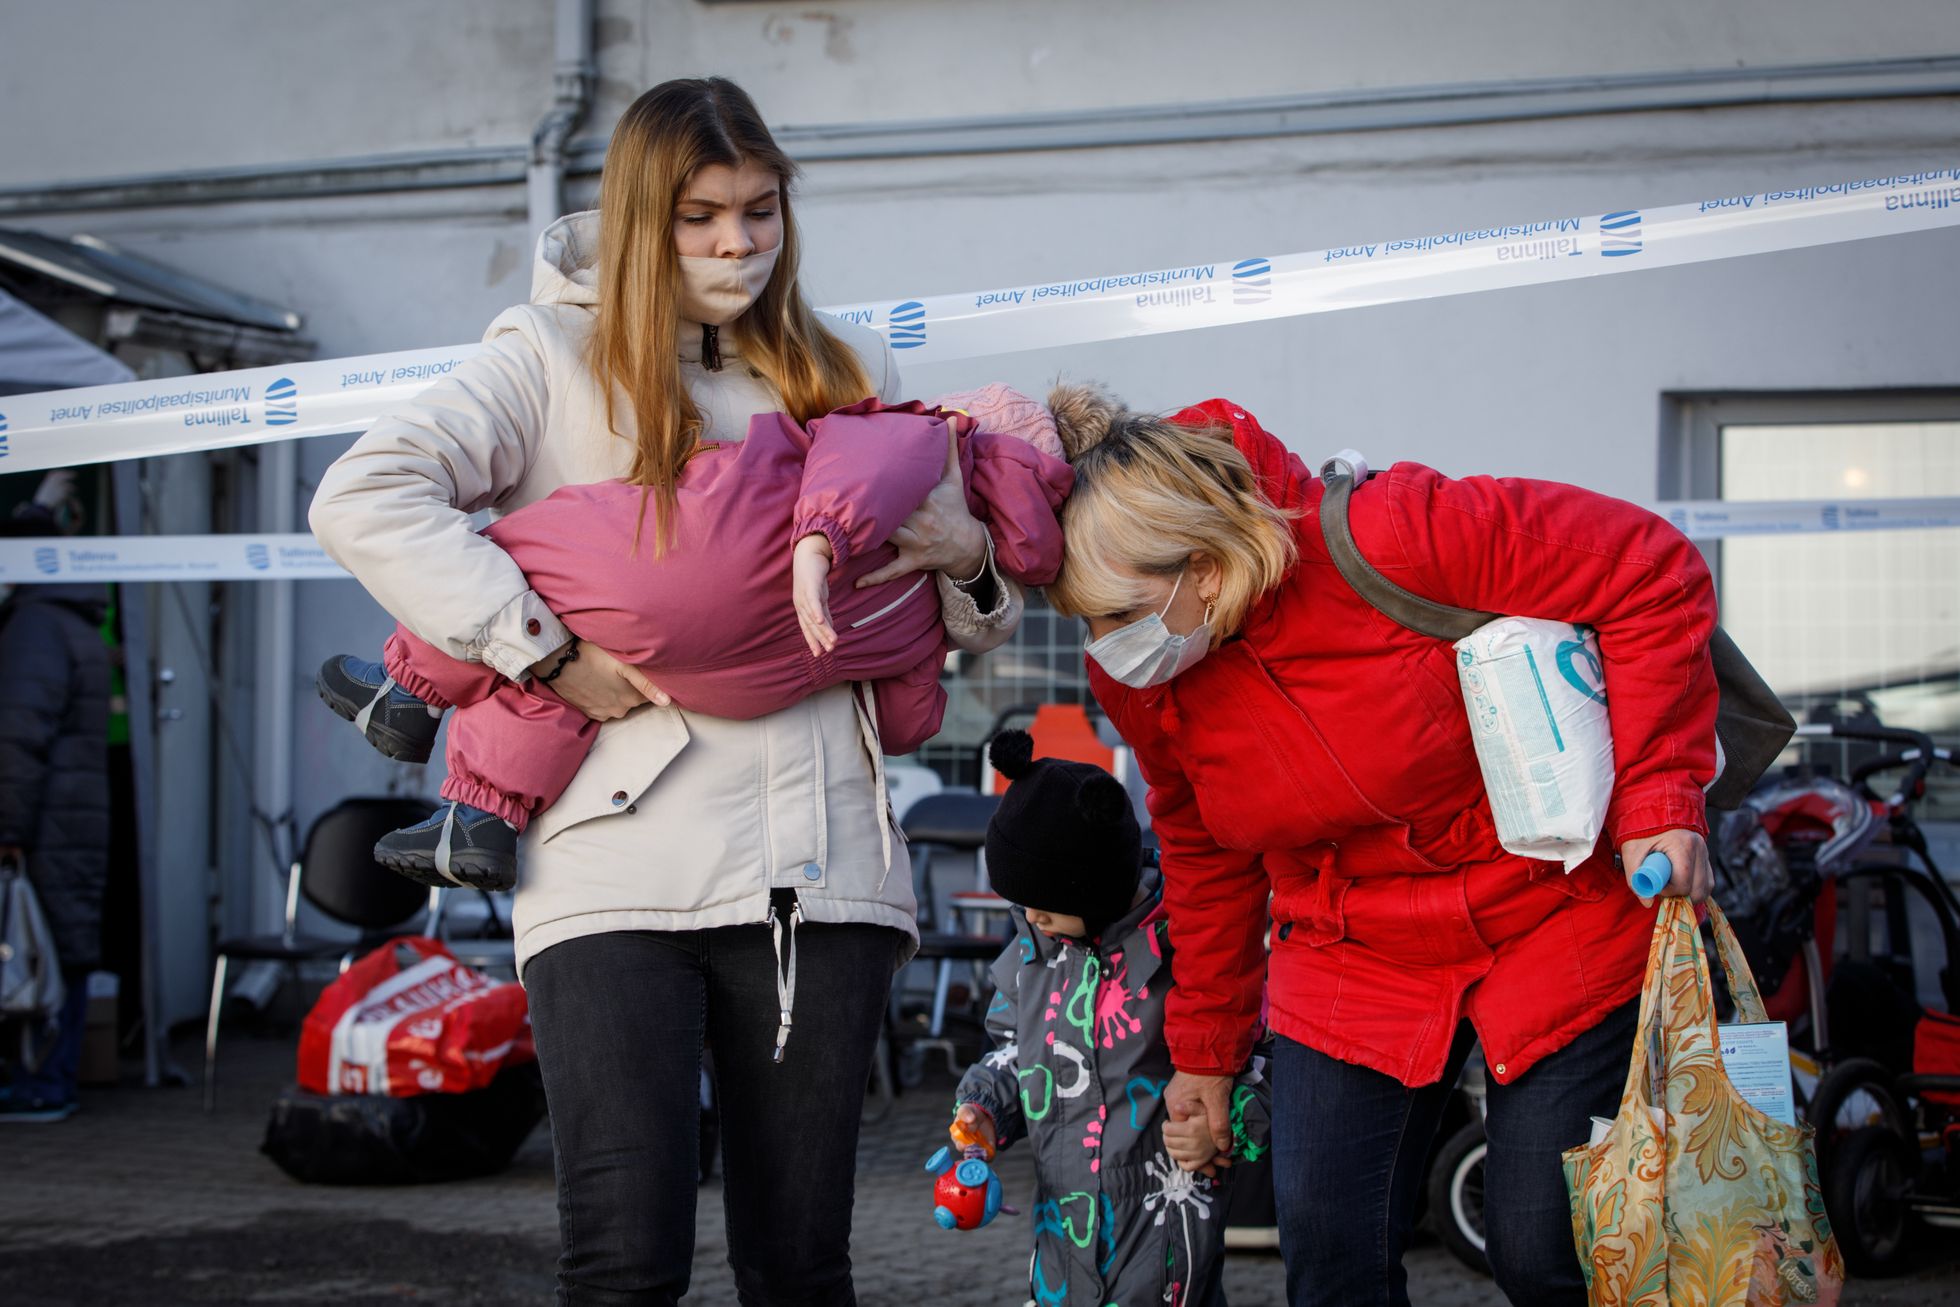 Saabumine
Ukrainast sõja eest põgenenud perekond on jõudnud Tallinna. Töö sõjapõgenike vastuvõtupunktis käib nii ööl kui päeval täie rauaga – inimesi registreeritakse, söödetakse, antakse kaasa toidupakk, vajalikud hügieenitarbed ja riided.